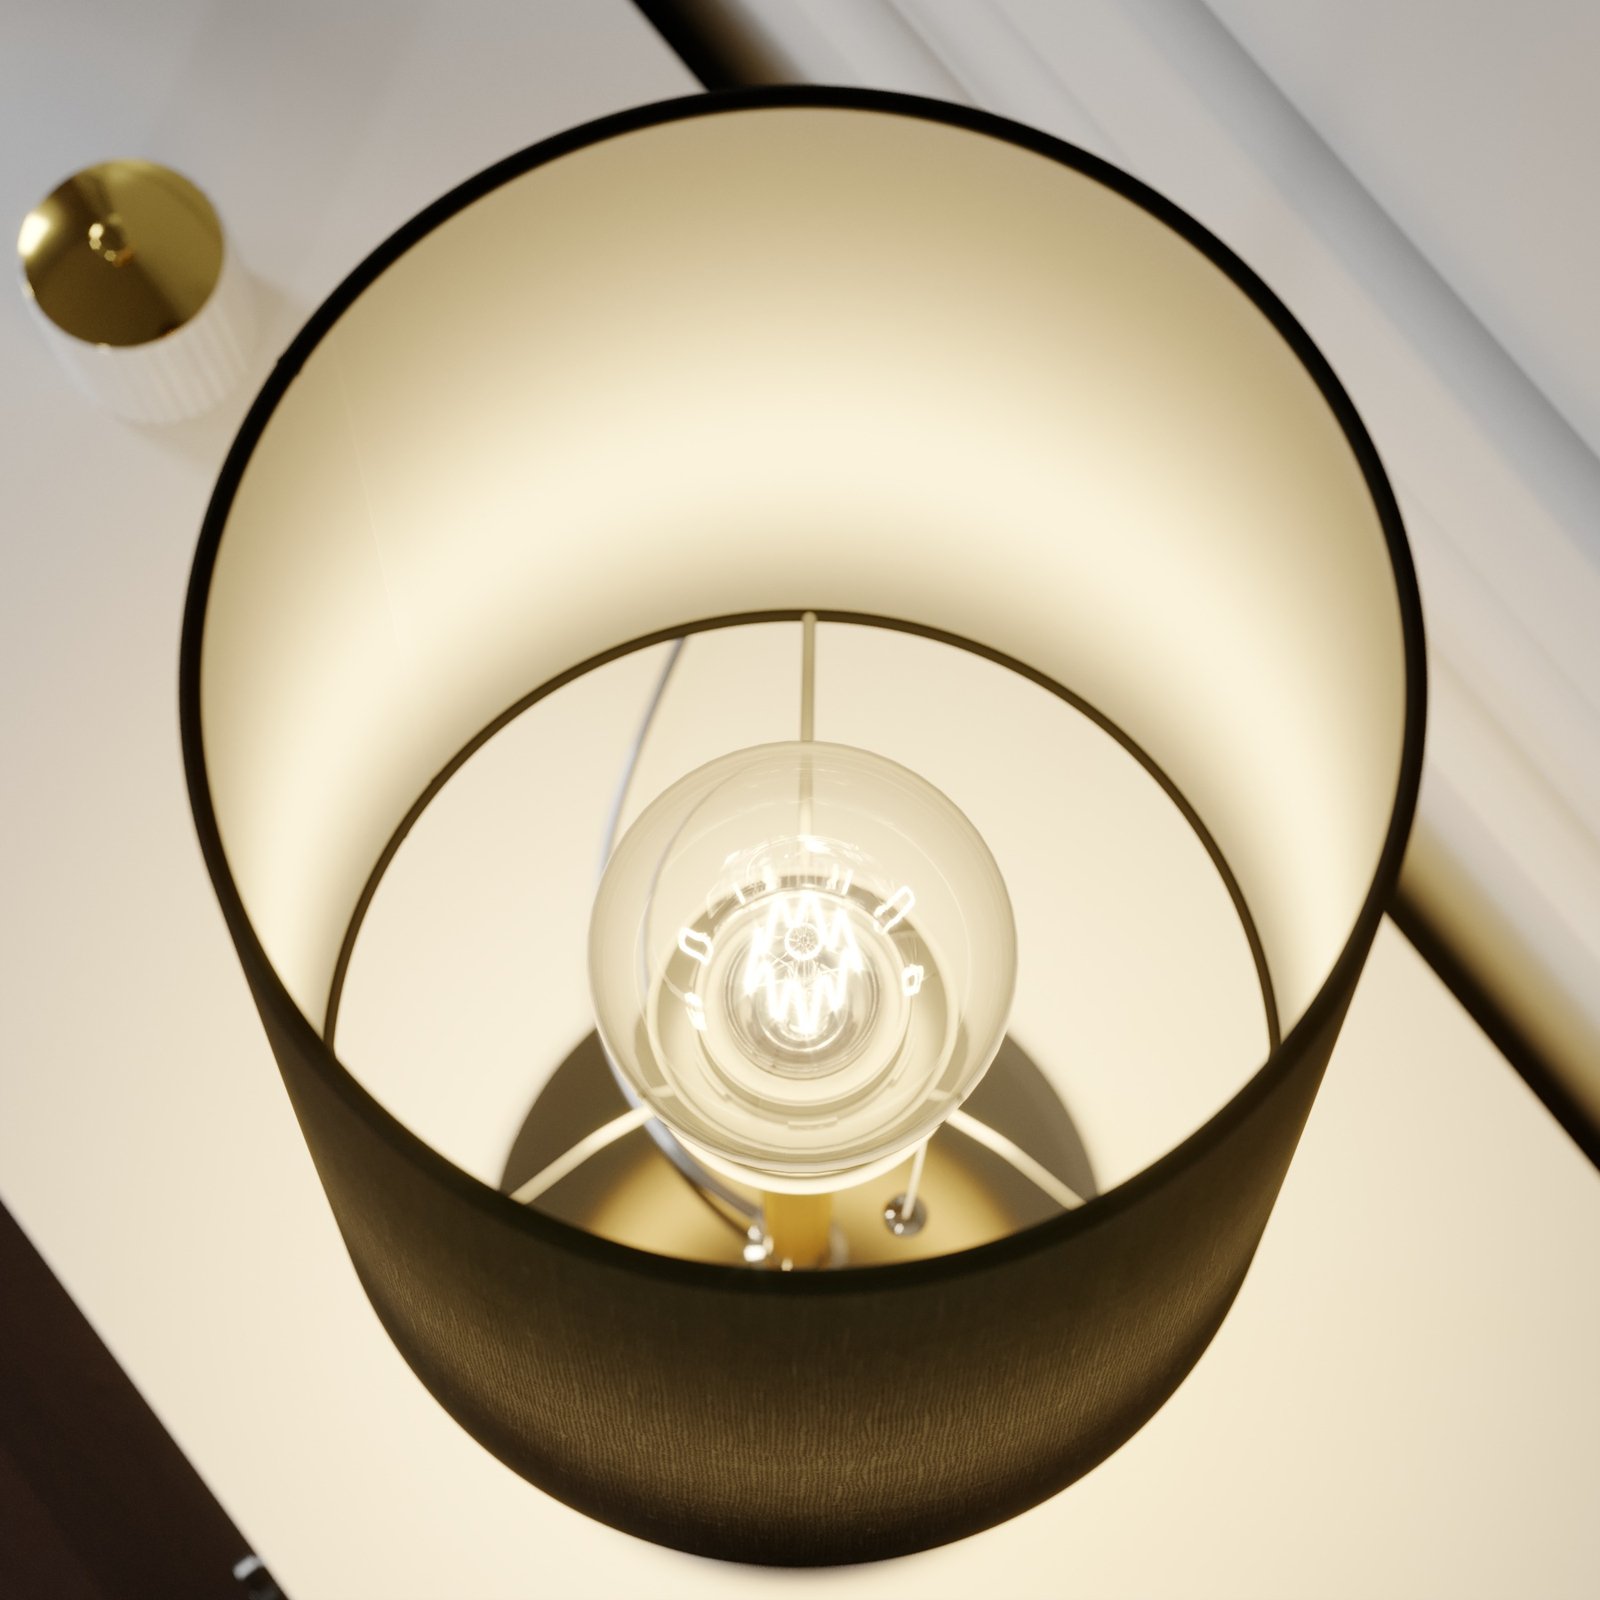 Lucande Pordis lampada da tavolo, nero-ottone